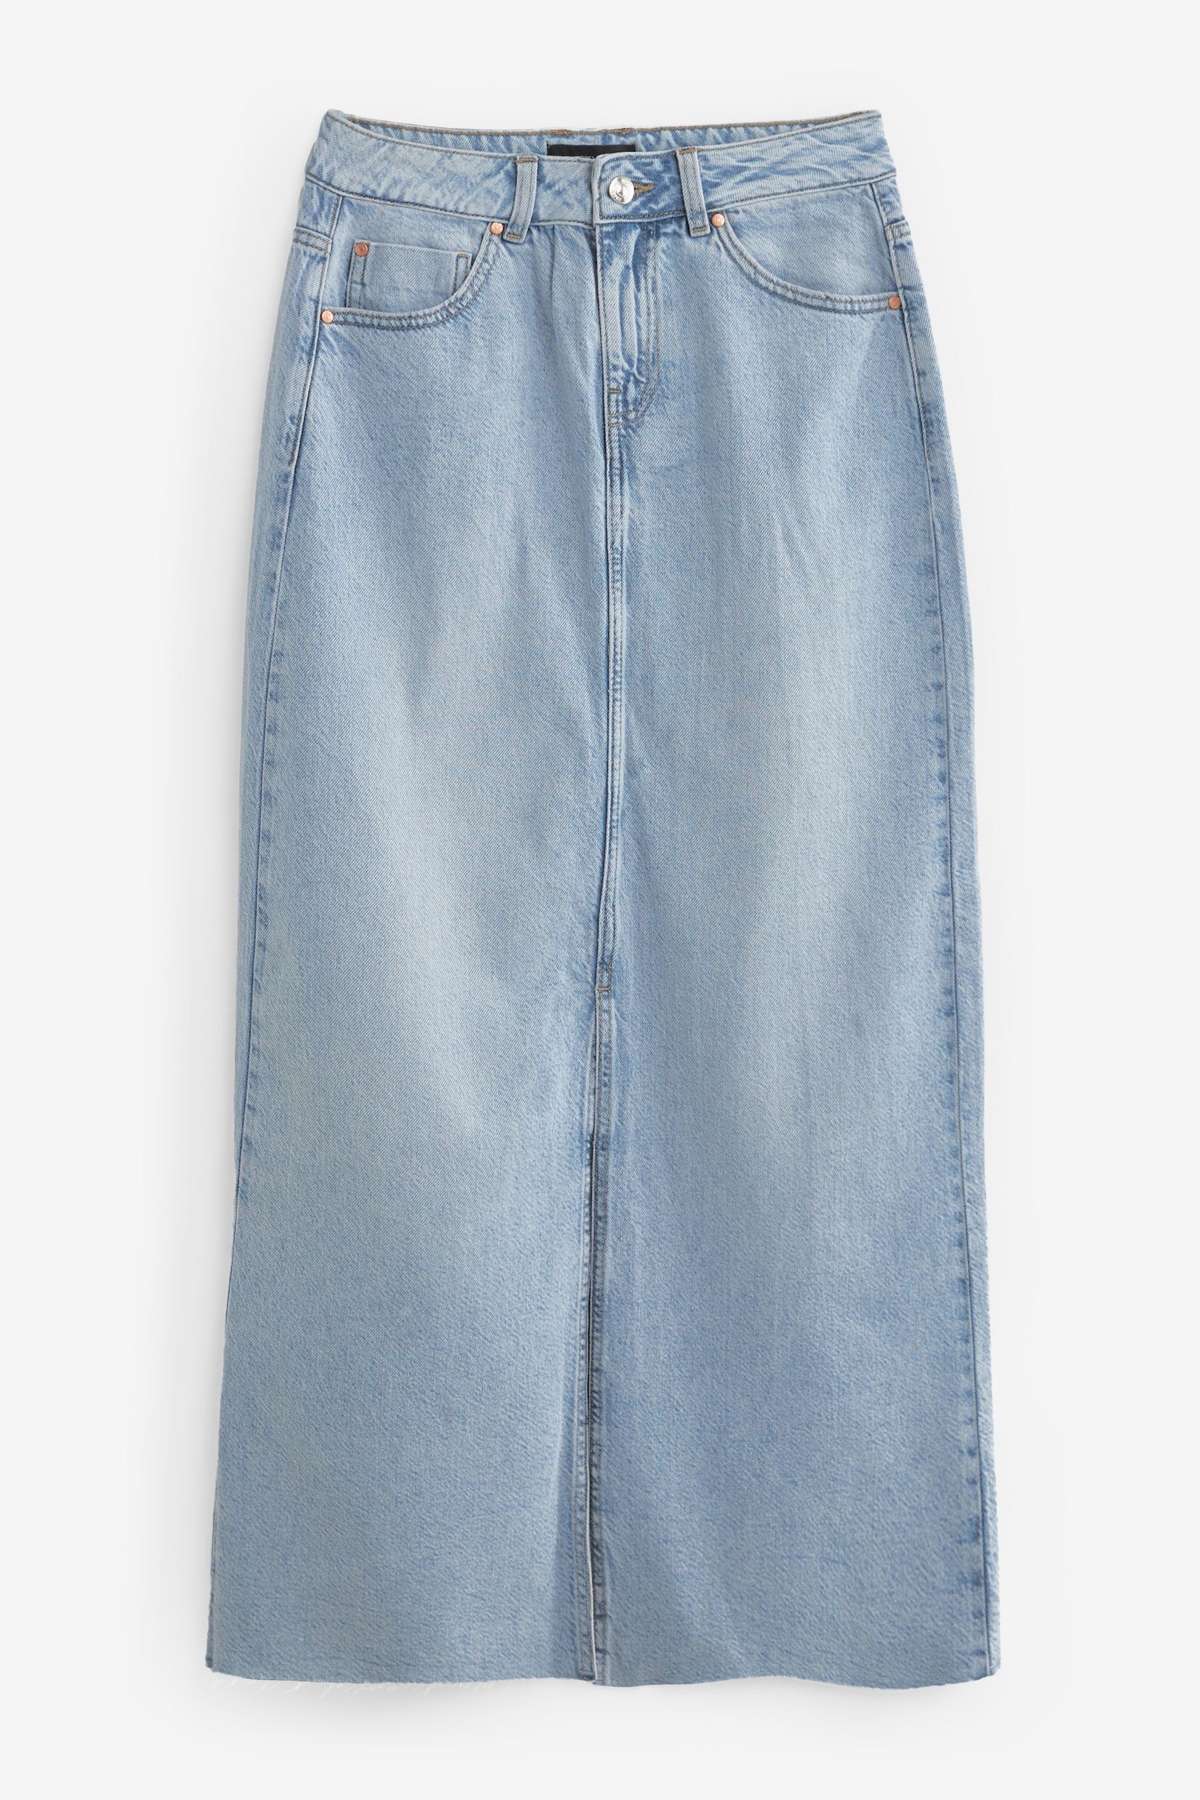 Джинсовая юбка джинсовая юбка-макси (1 шт.)